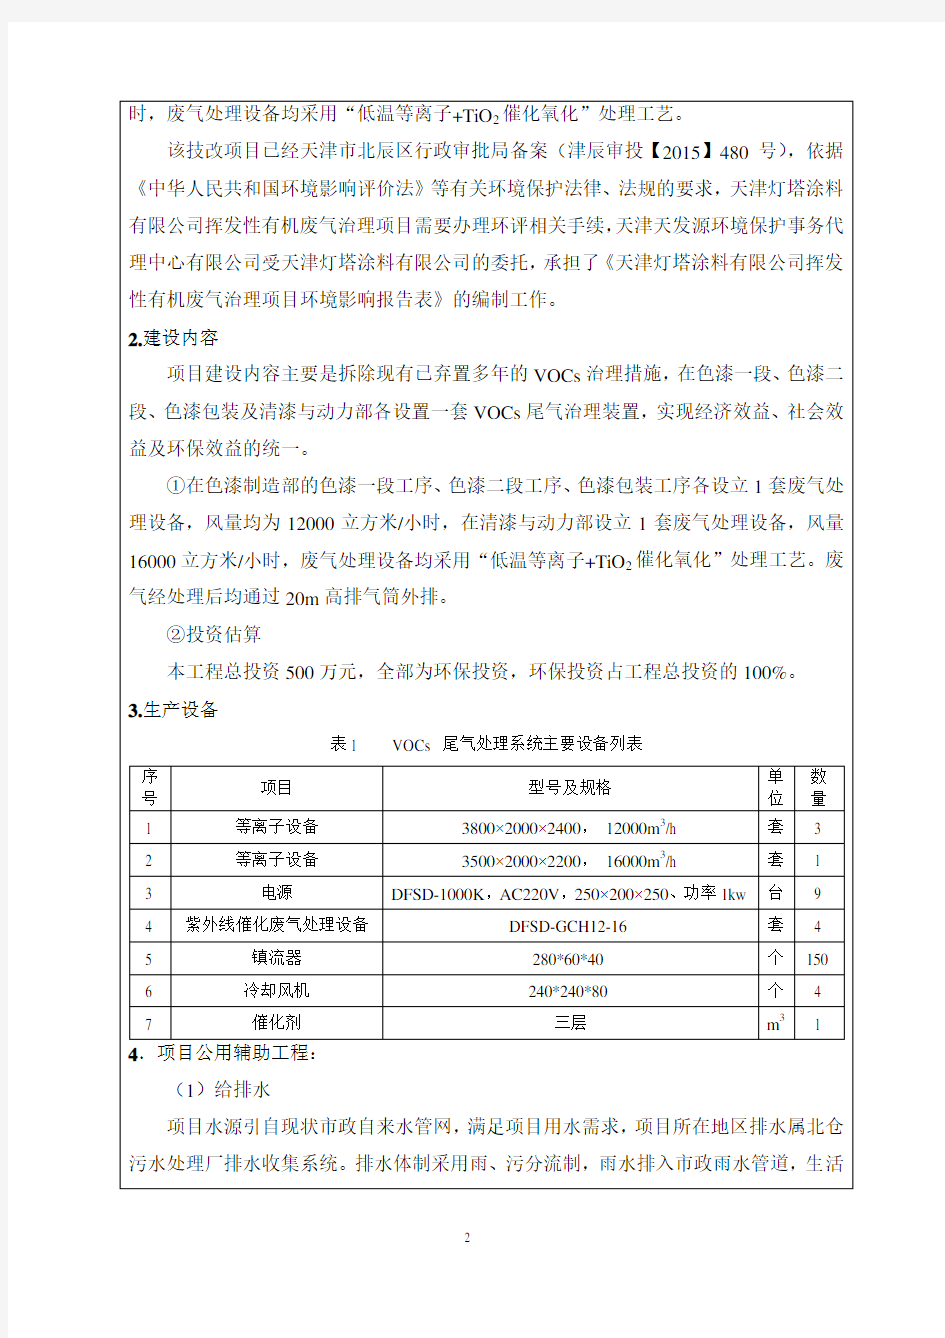 环境影响评价报告公示：天津灯塔涂料挥发性有机废气治理项目全本公示环评报告